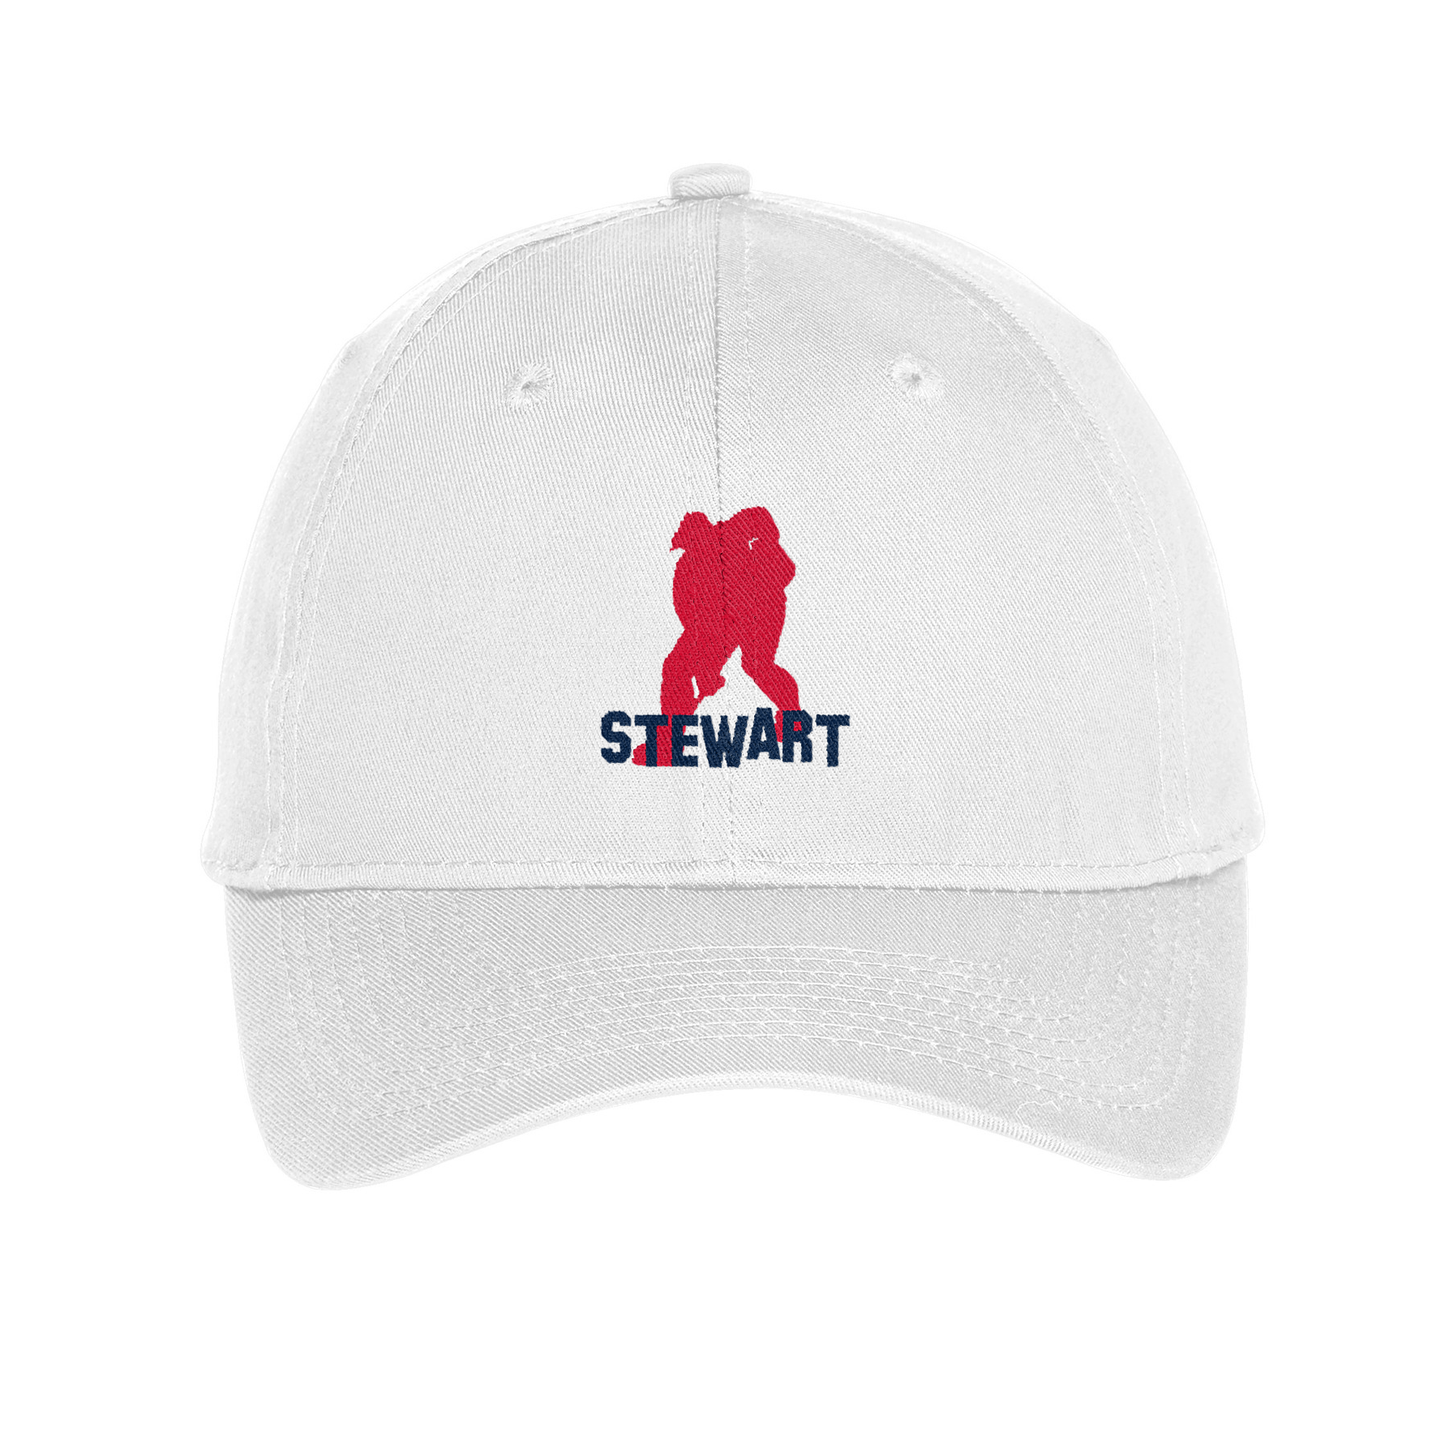 GT Stewart Embroidered Twill Cap